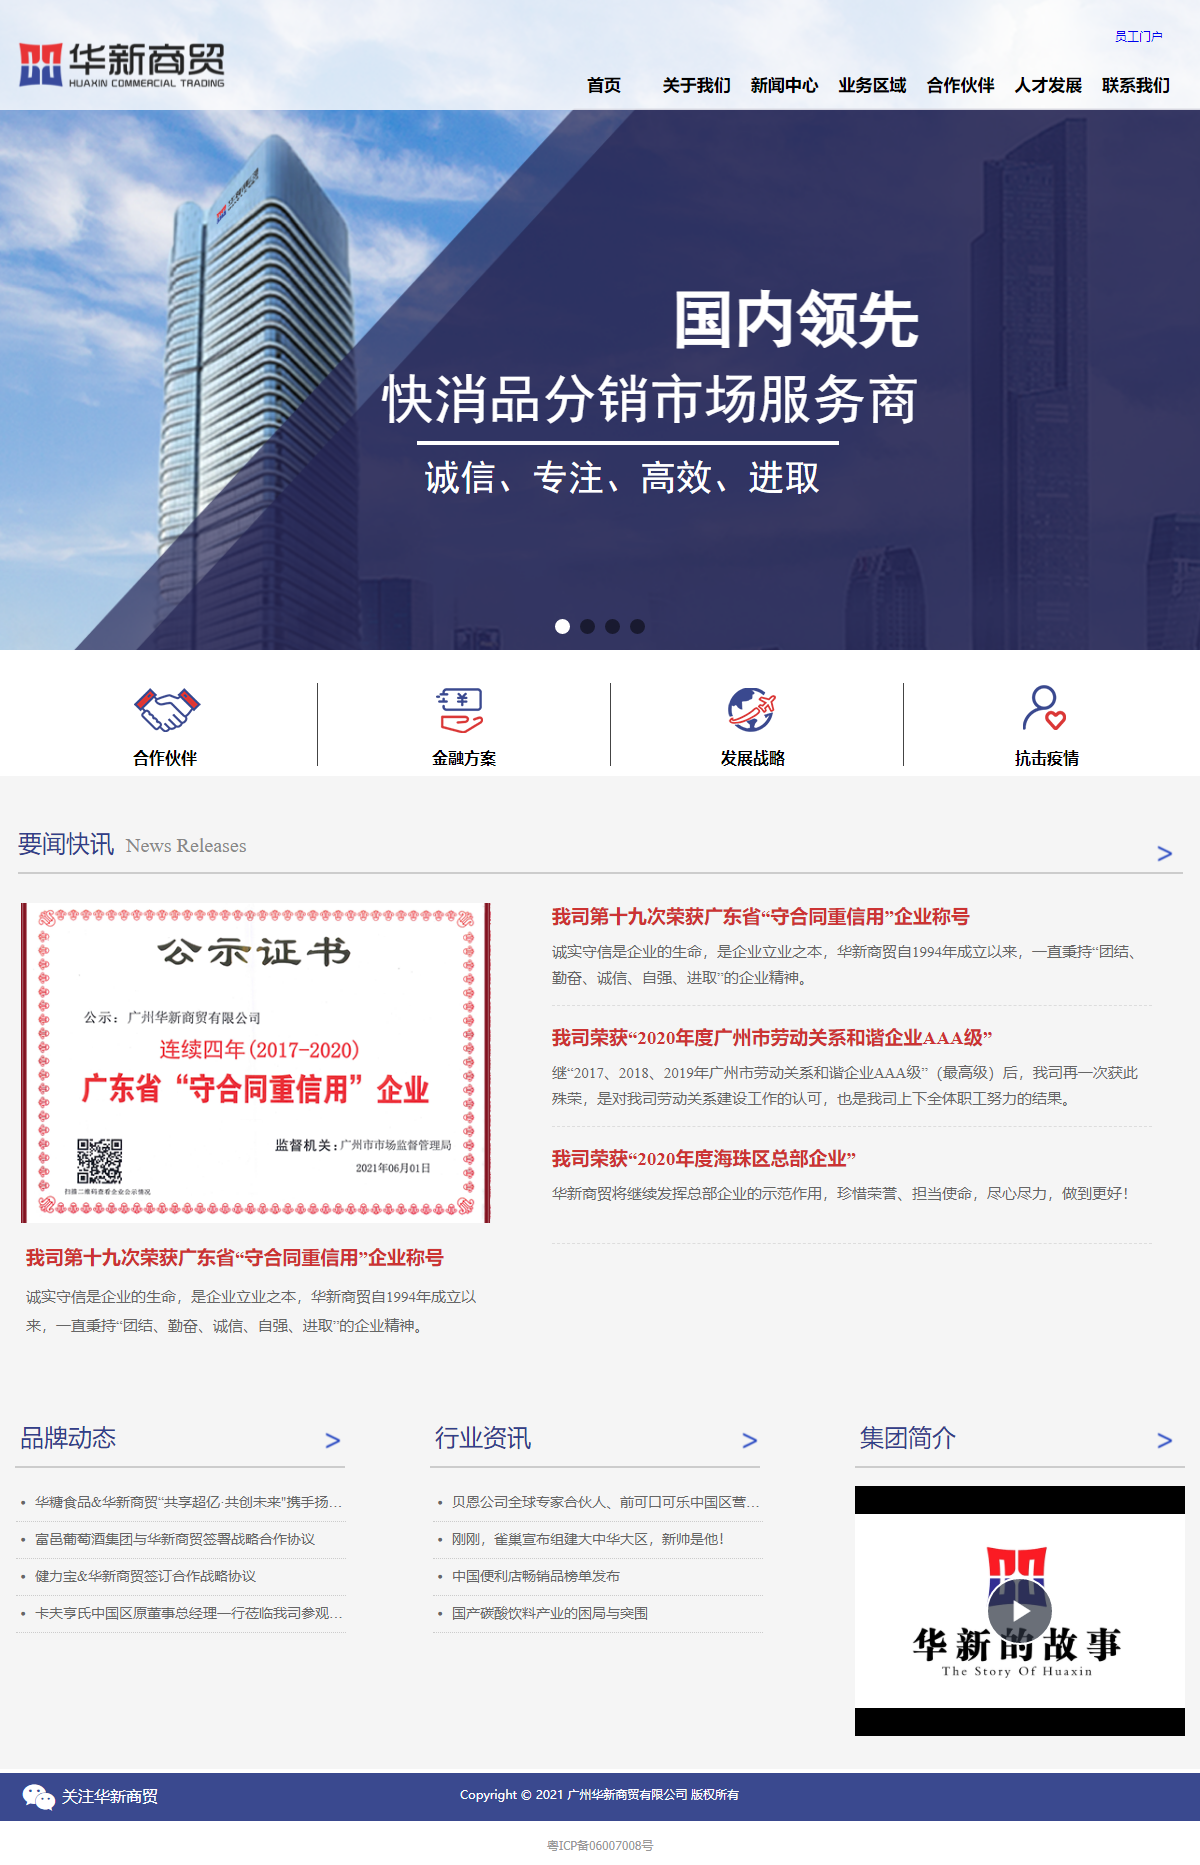 广州华新商贸有限公司网站案例